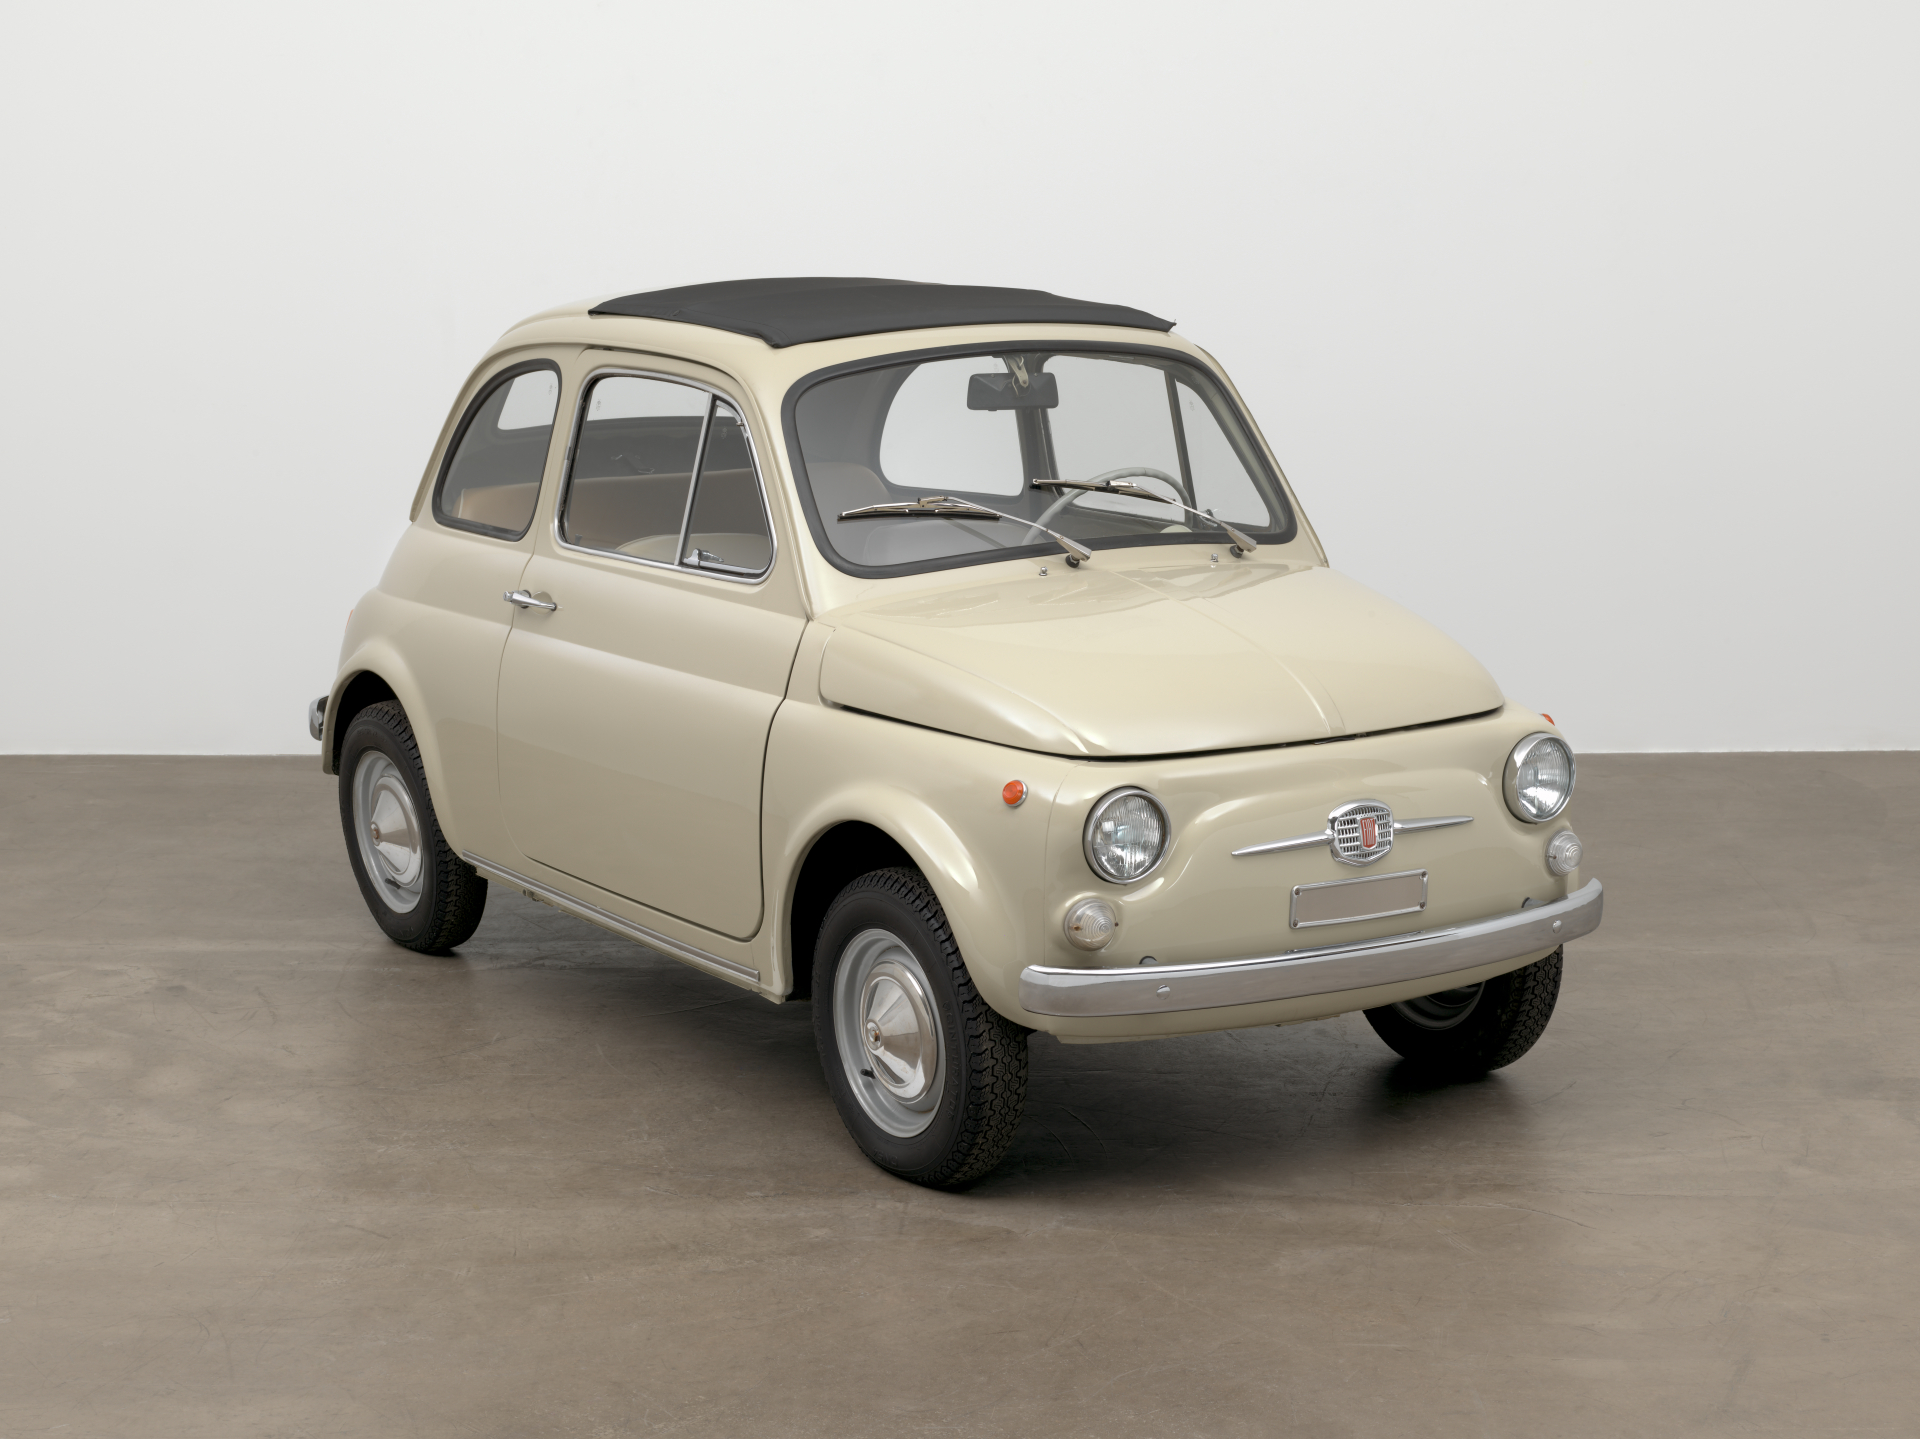 La Leggendaria Fiat 500 Celebra 67 Anni di Iconicità e Innovazione.